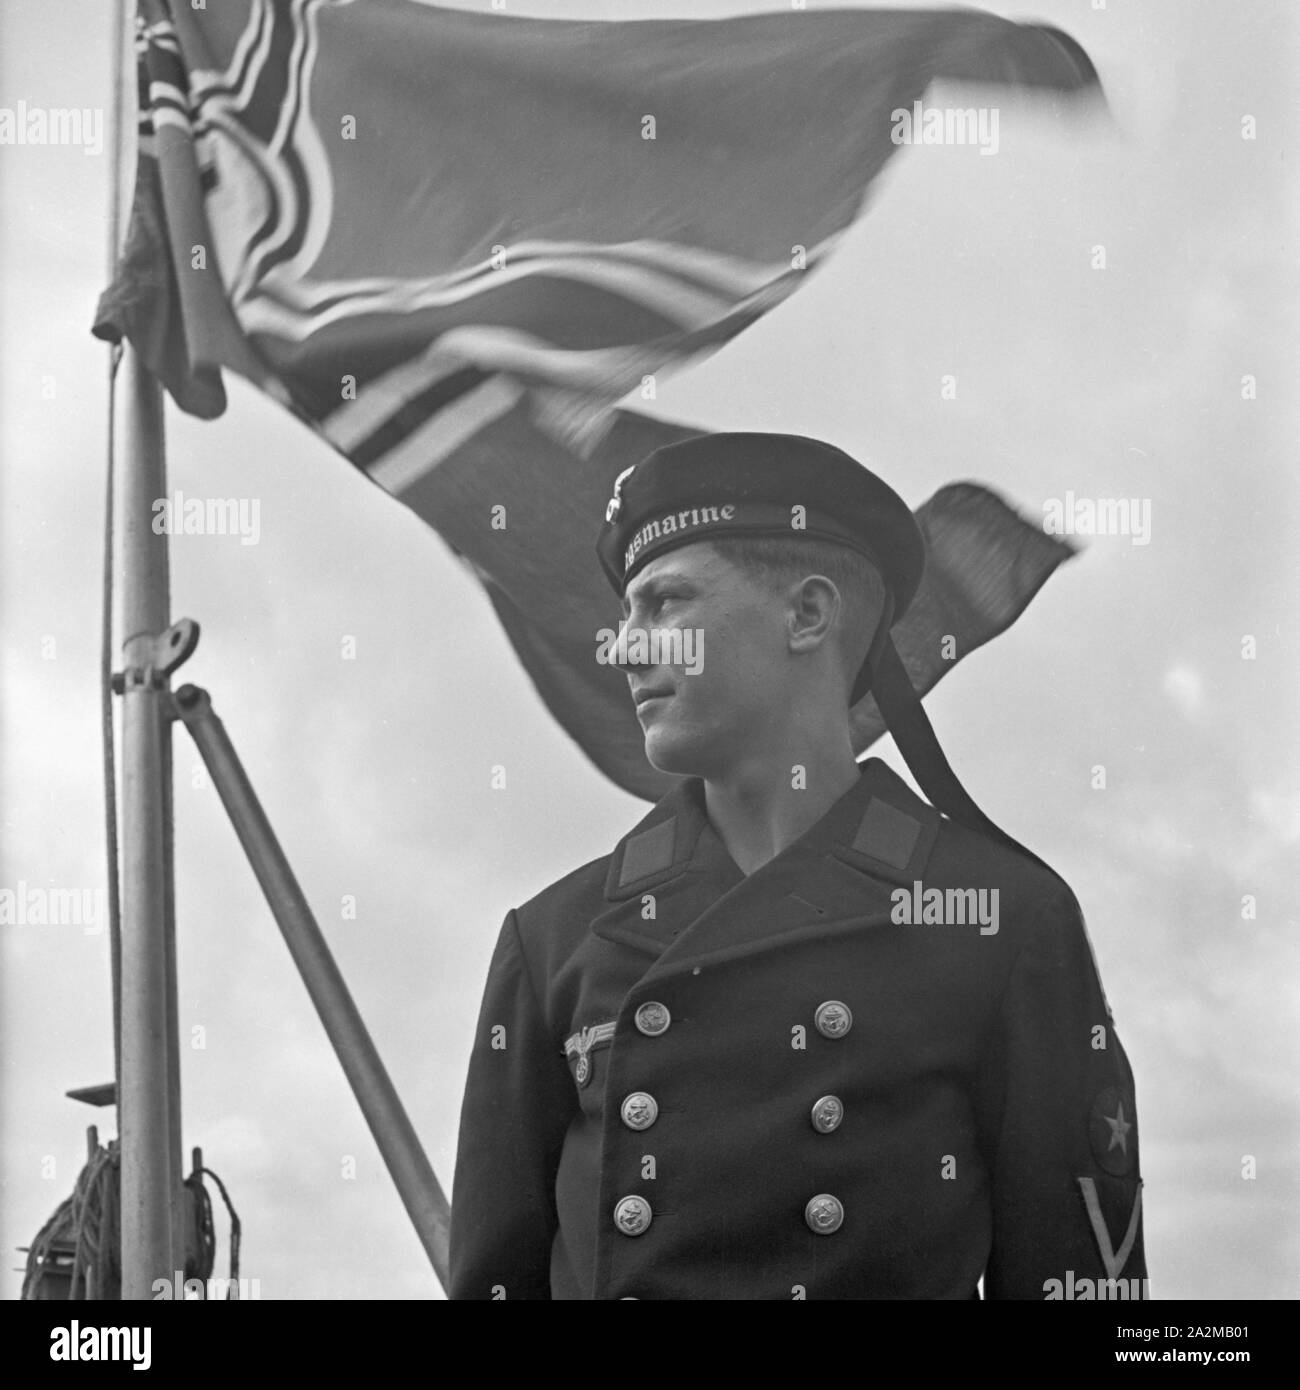 Original-Bildunterschrift: Porträt eines Matrosen der deutschen Kriegsmarine, Deutschland 1940er Jahre. Ritratto di un soldato della marina tedesca, Germania 1940s. Foto Stock